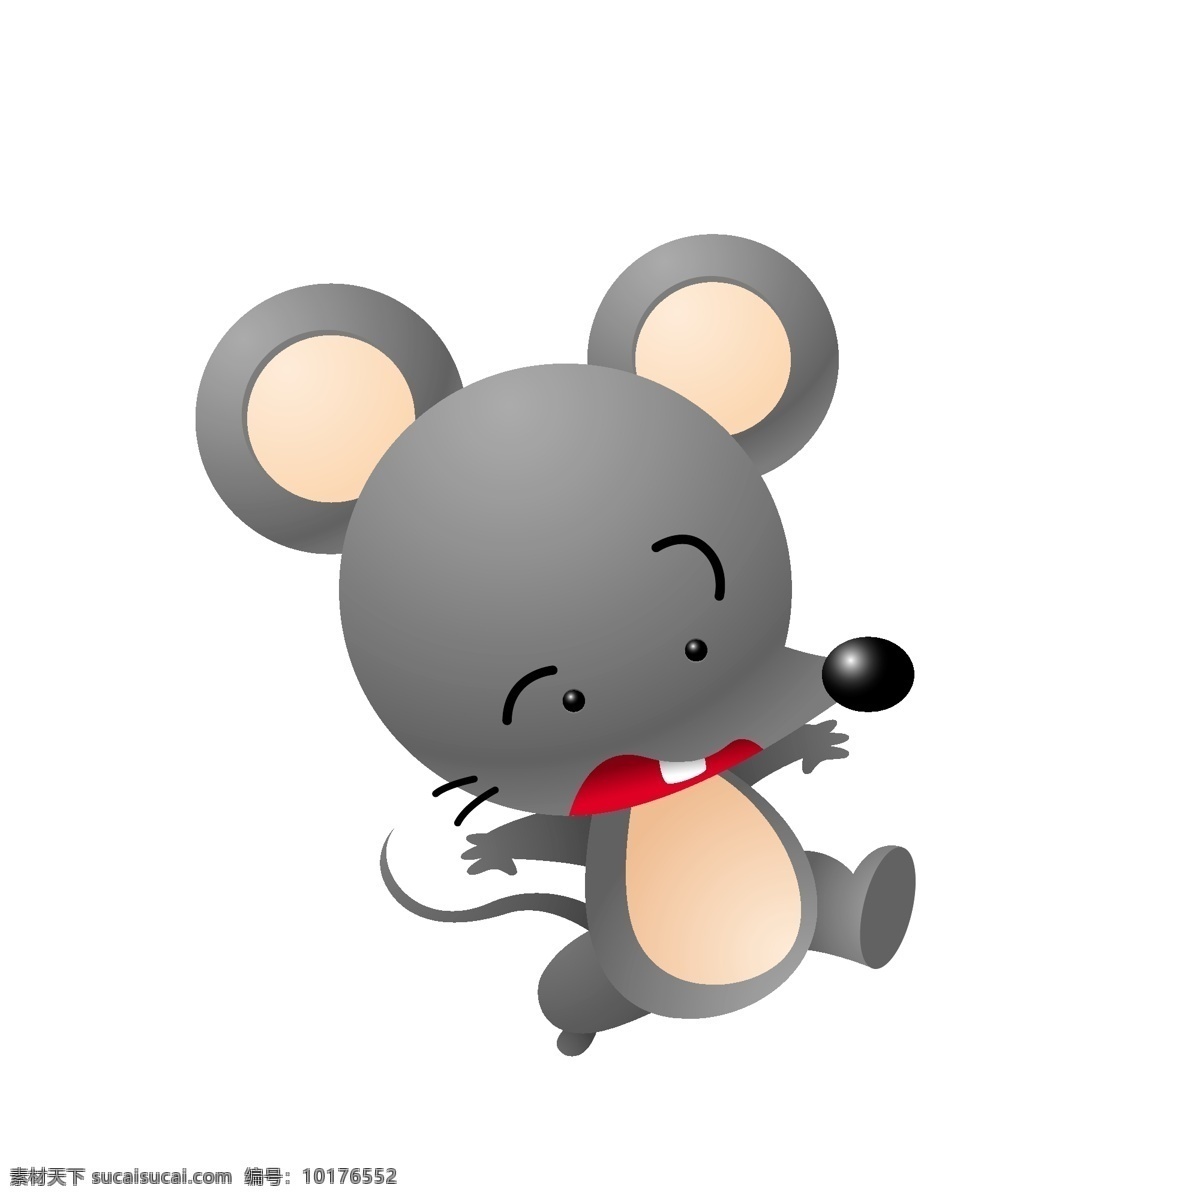 卡通 惊吓 老鼠 矢量 动物 模板 素材图片 矢量动物 卡通动物